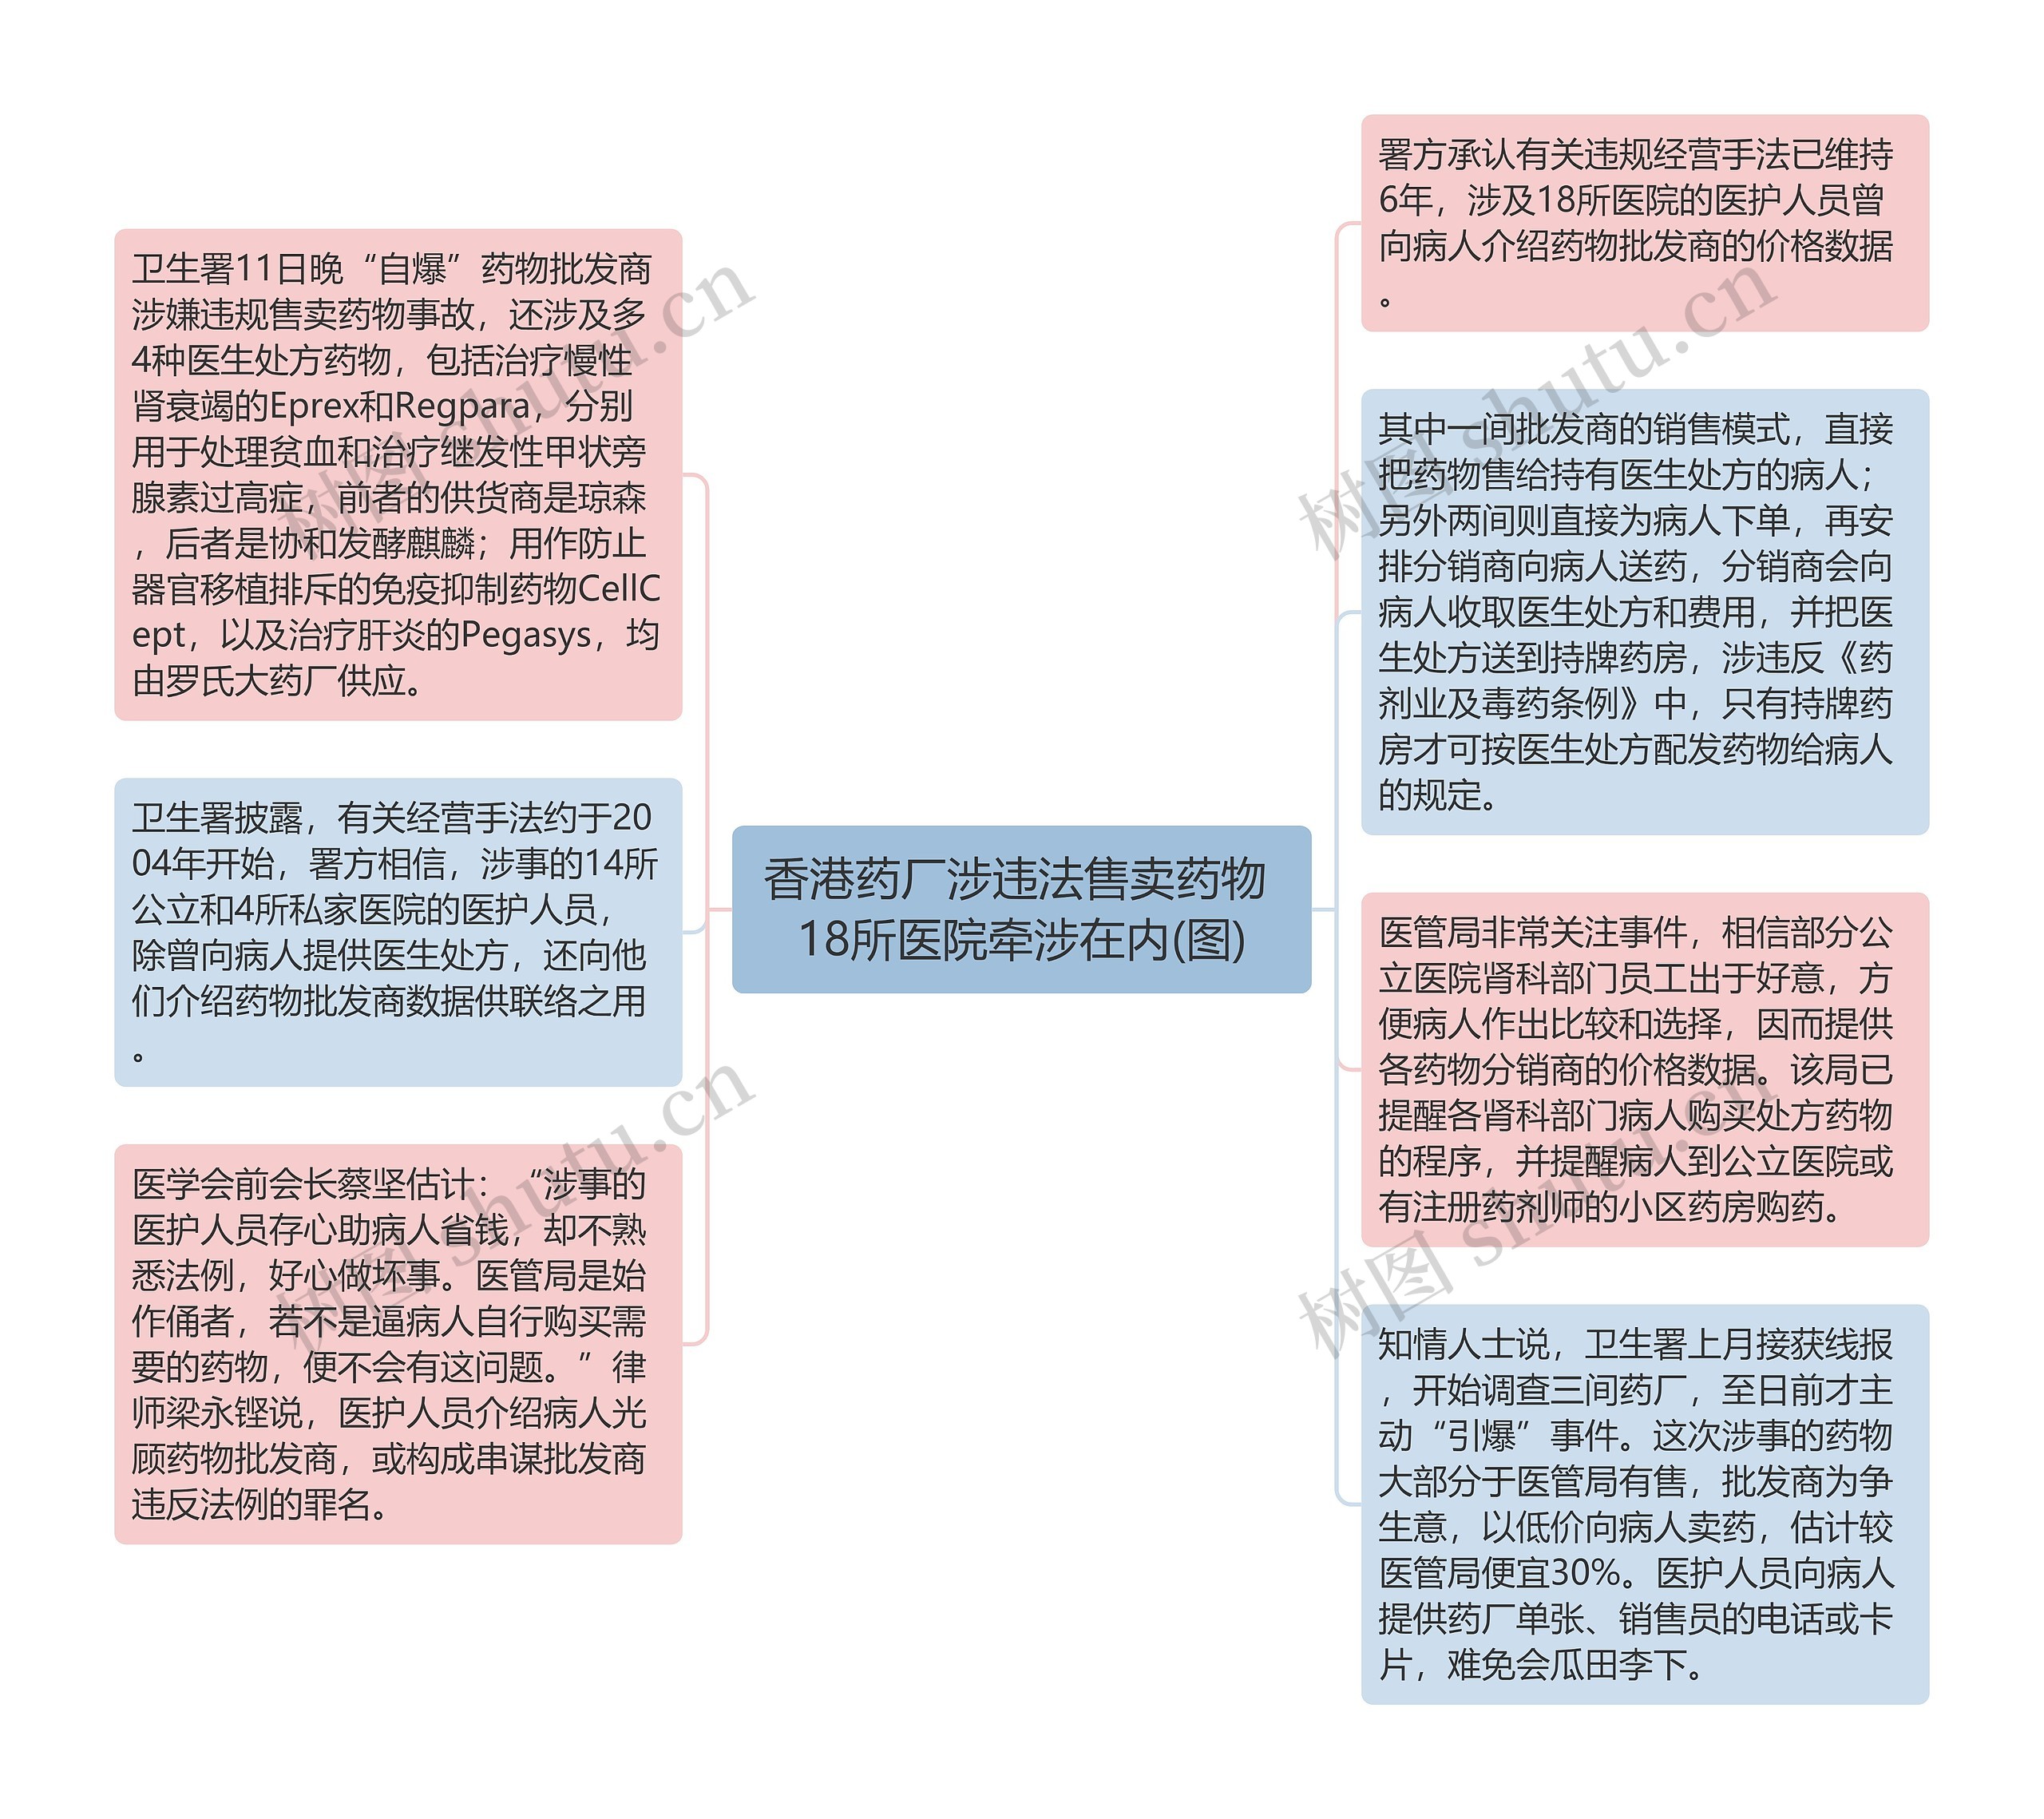 香港药厂涉违法售卖药物 18所医院牵涉在内(图)思维导图